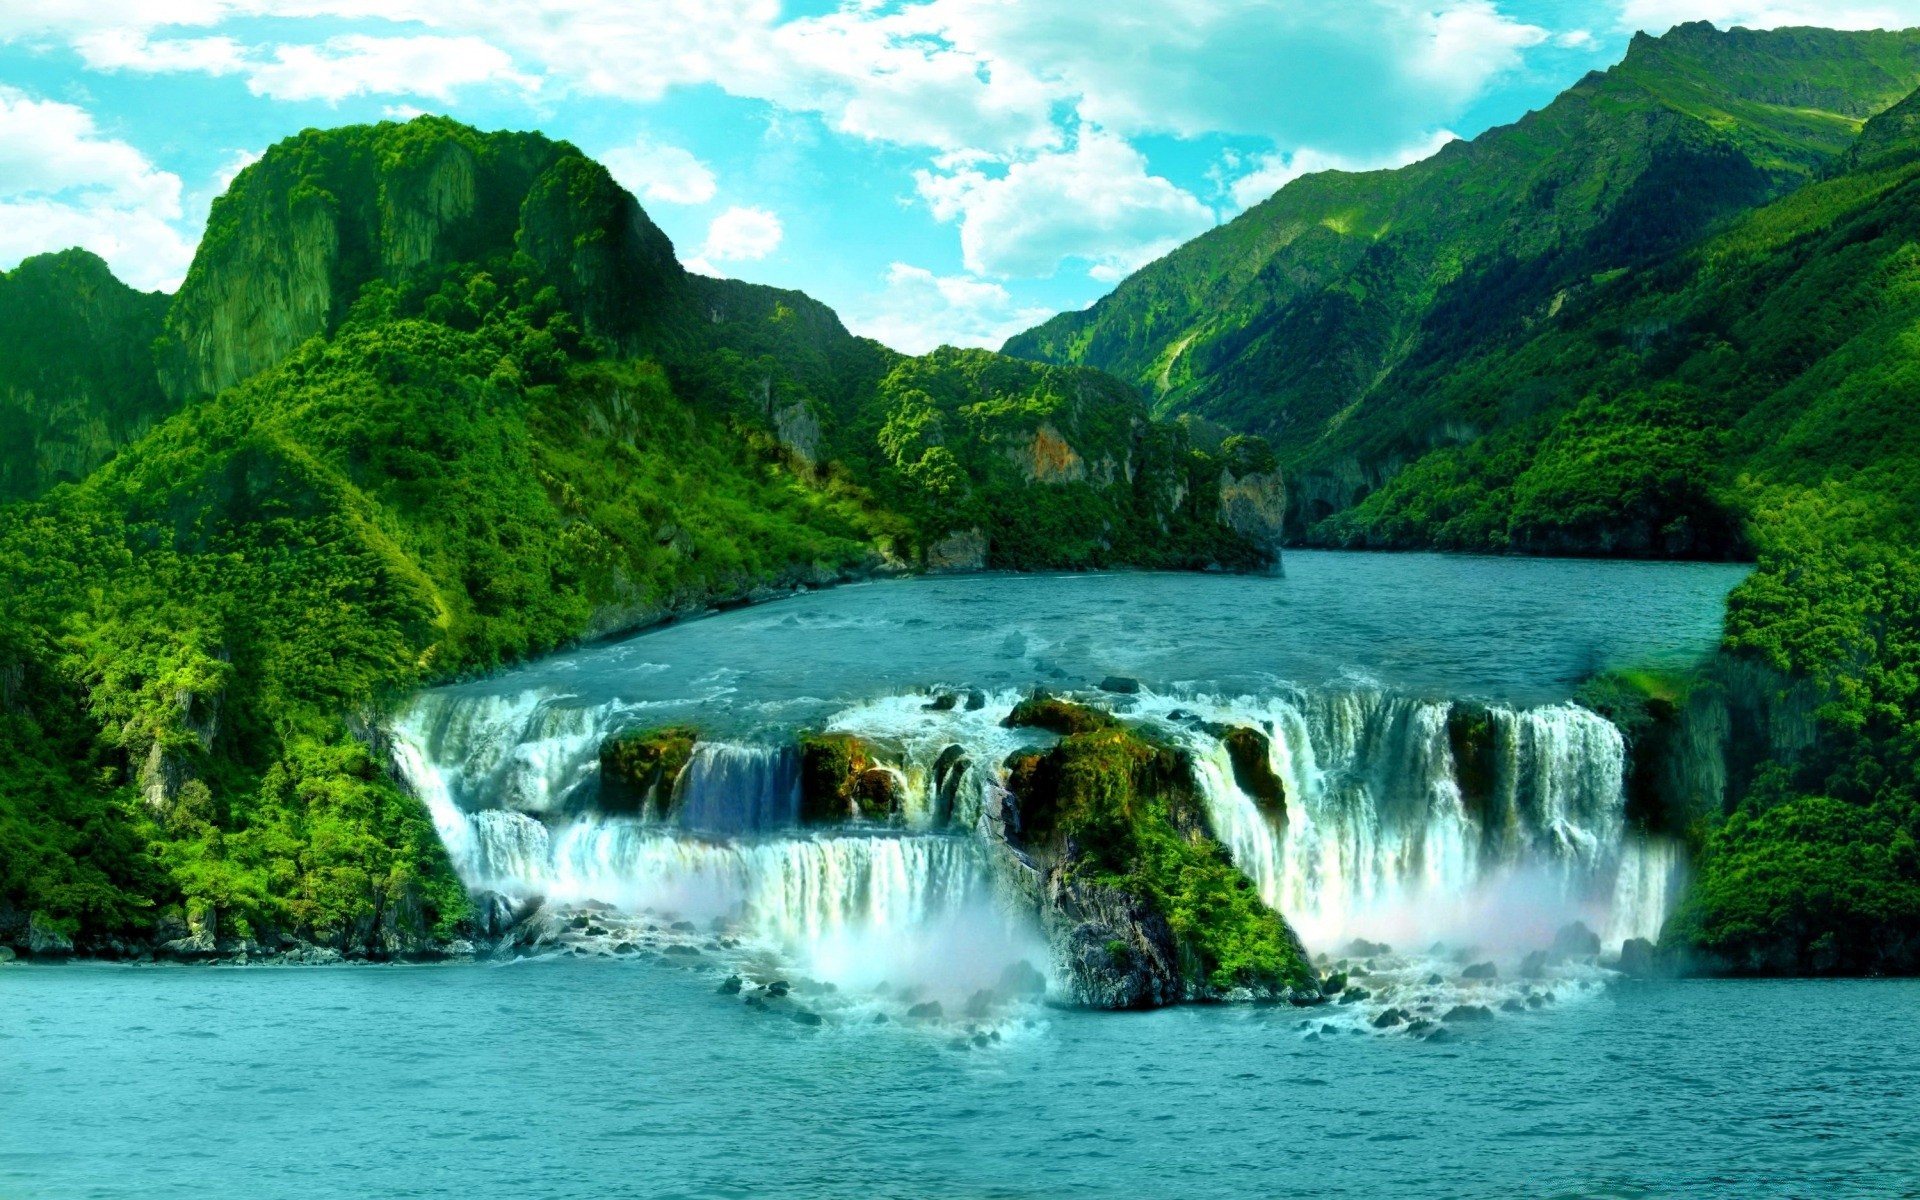 водопады воды природа путешествия пейзаж водопад на открытом воздухе рок живописный горы река небо лето древесины пейзаж отпуск тропический туризм